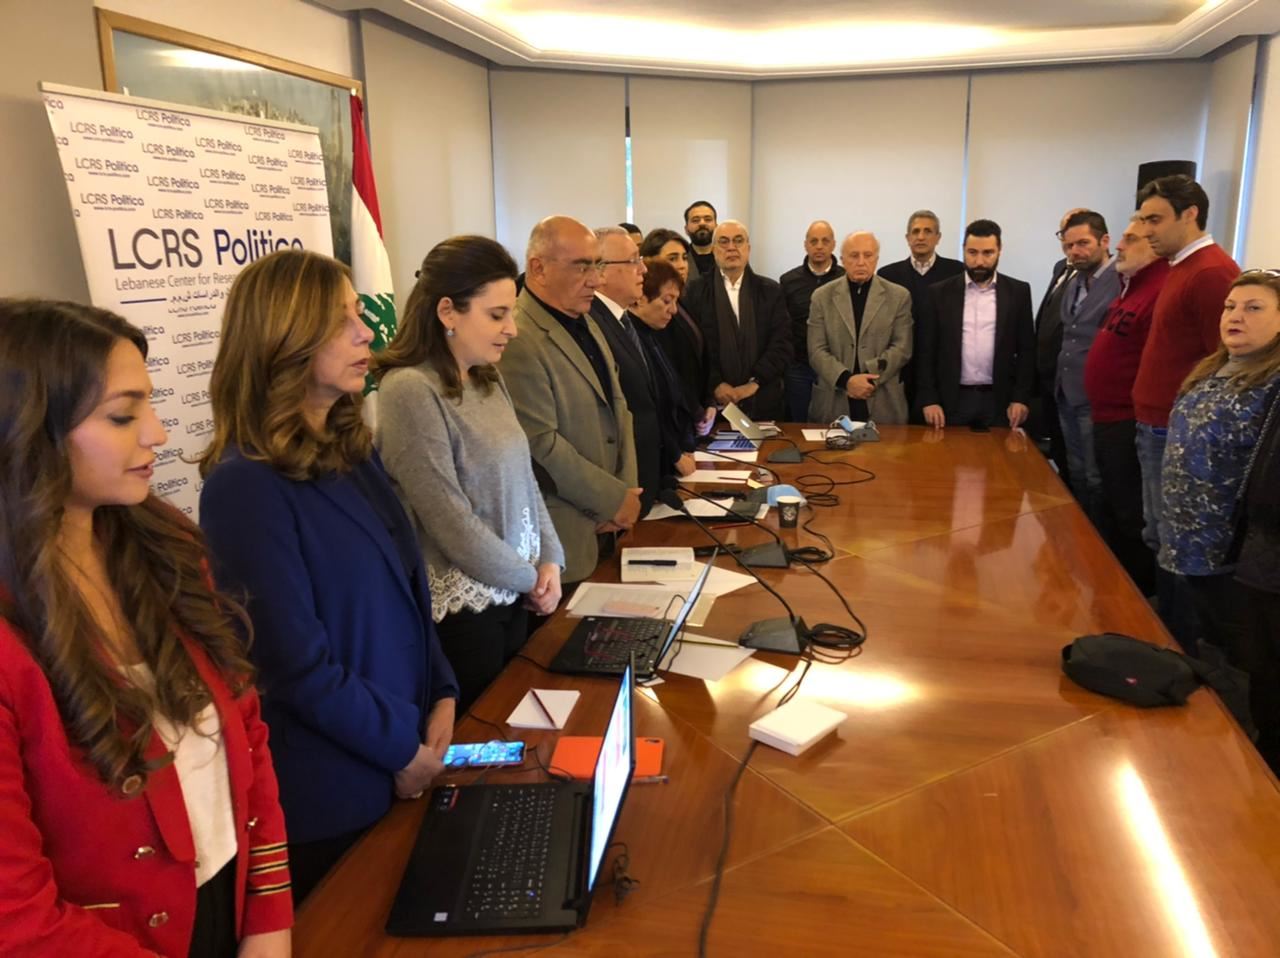 مجلس لبناني لـ"رفع الاحتلال الإيراني": موقف من الانتخابات والاعتداءات!